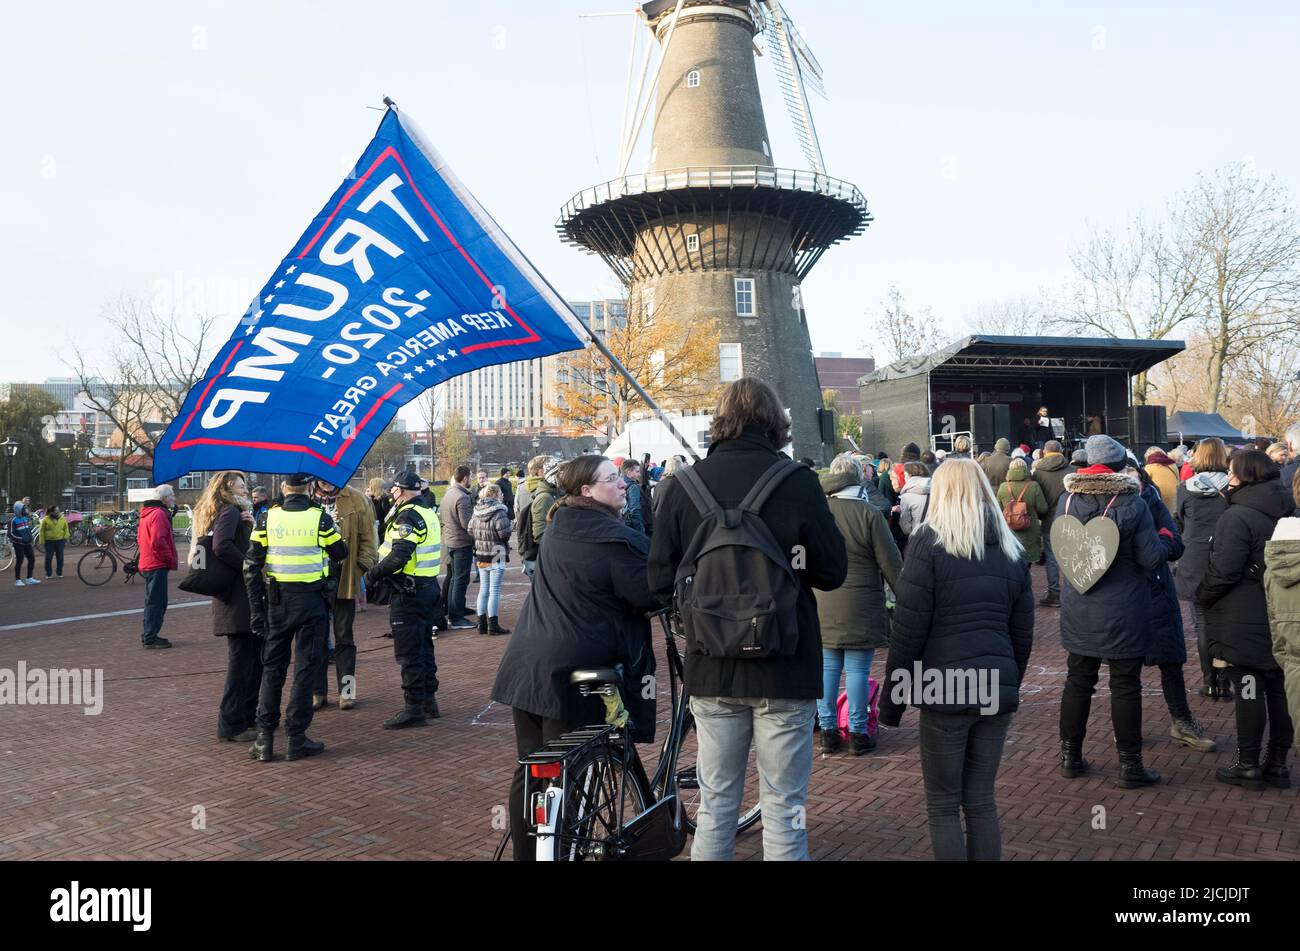 29-11-2020 Leiden, pays-Bas. Manifestation contre la vaccination. Une foule très mitigée a manifesté pacifiquement pendant les restrictions des coviles Banque D'Images